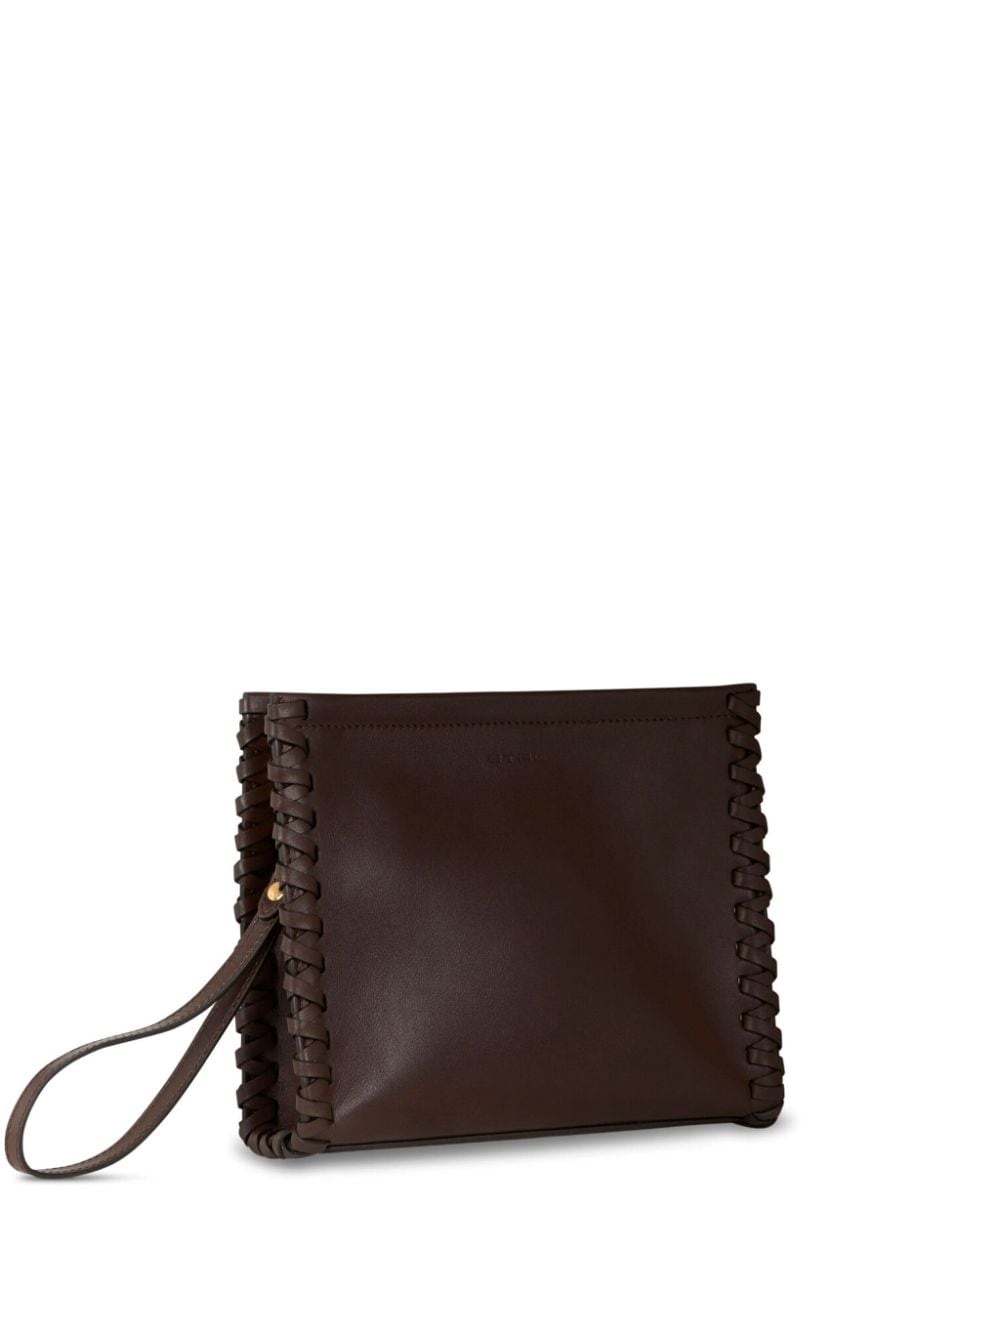 medium braided leather clutch bag - 3